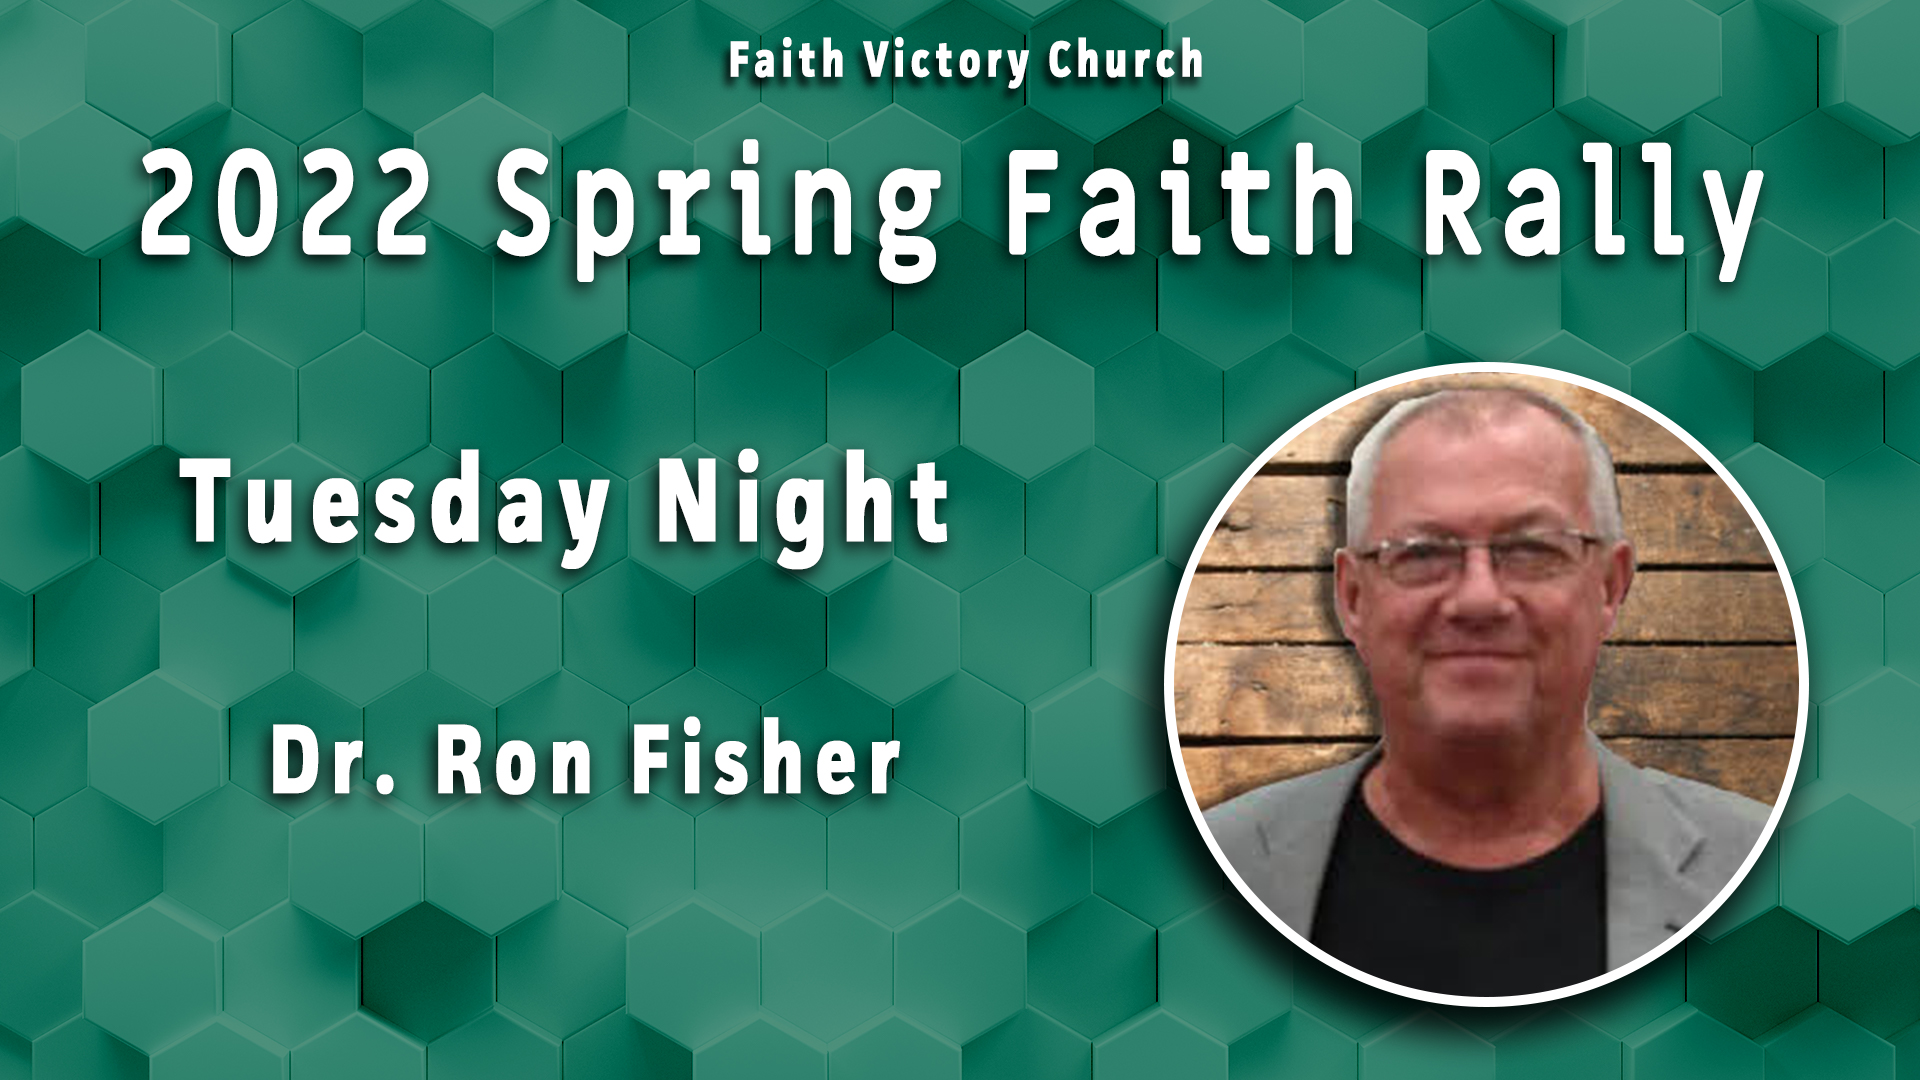 2022 Spring Faith Rally Tuesday Night